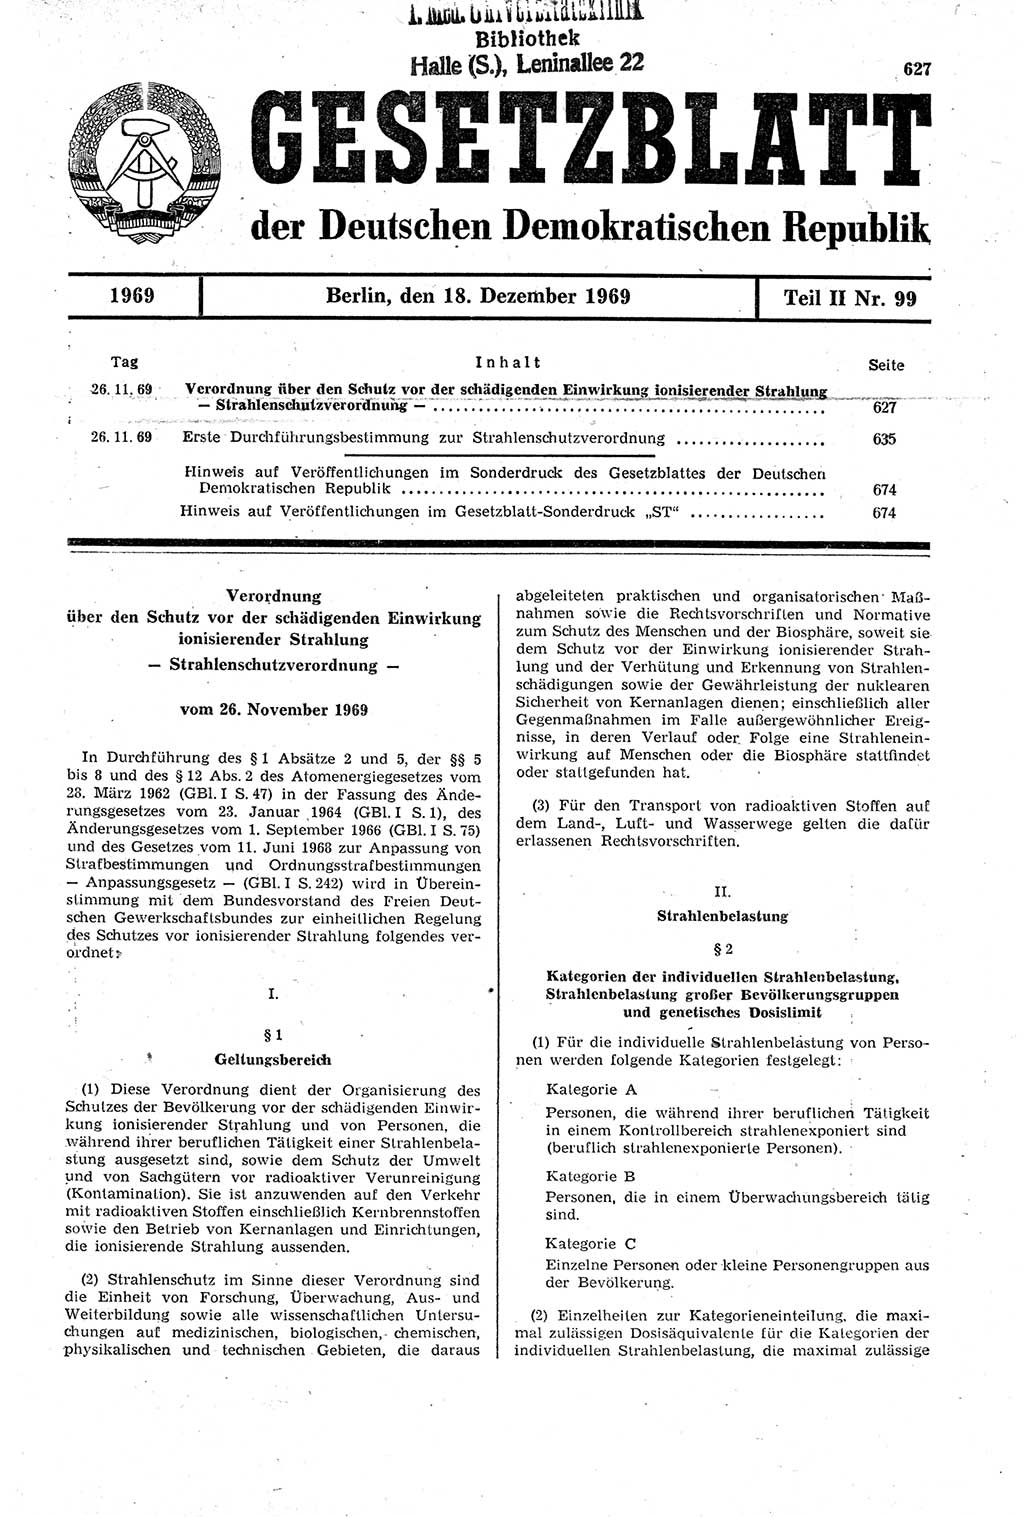 Gesetzblatt (GBl.) der Deutschen Demokratischen Republik (DDR) Teil ⅠⅠ 1969, Seite 627 (GBl. DDR ⅠⅠ 1969, S. 627)